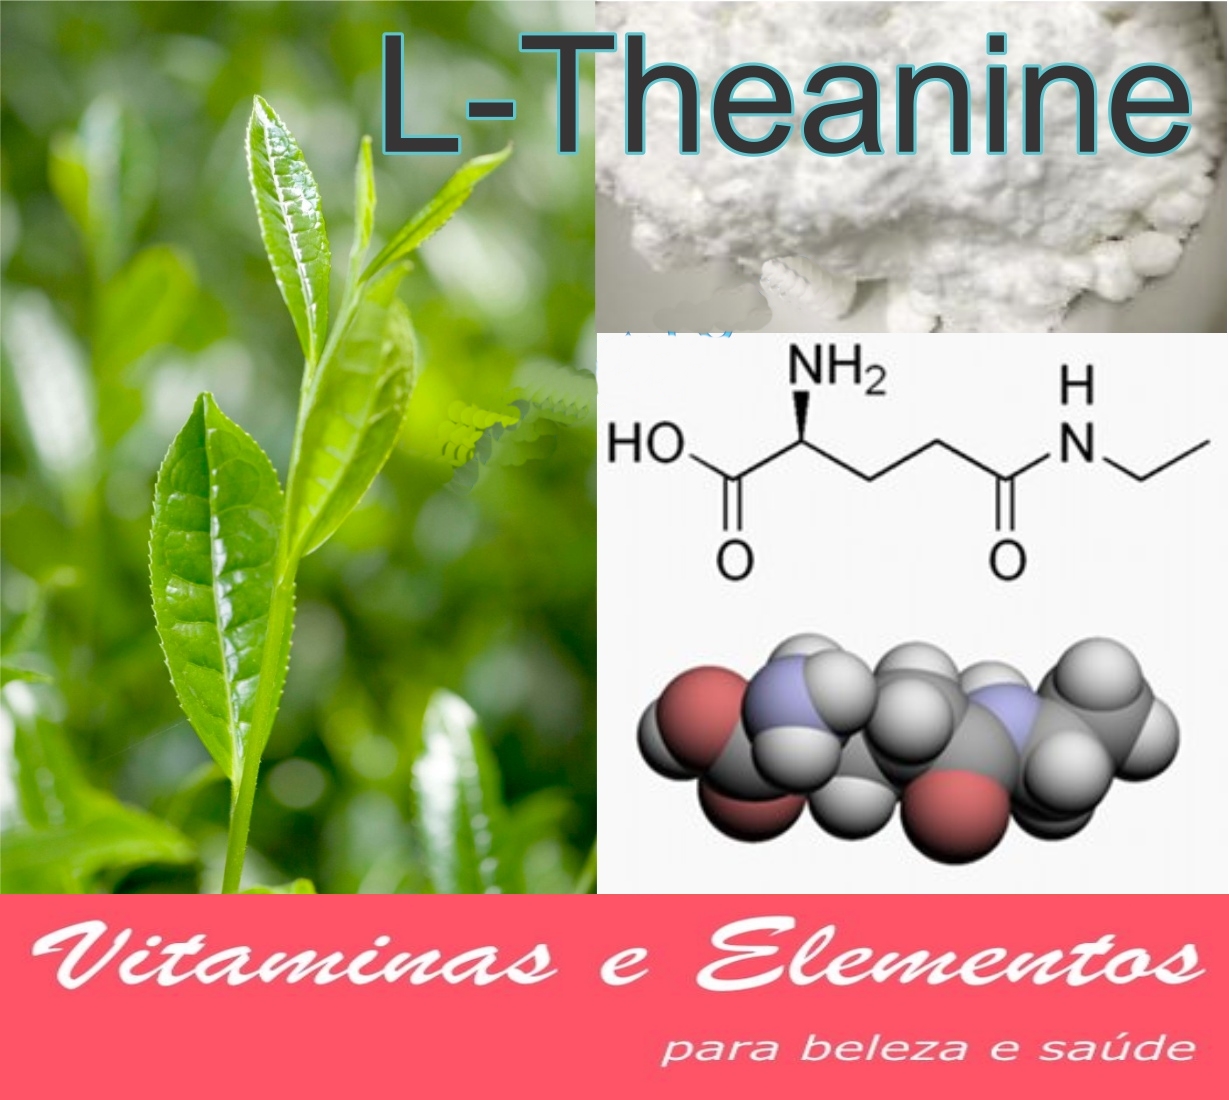 L-theanine